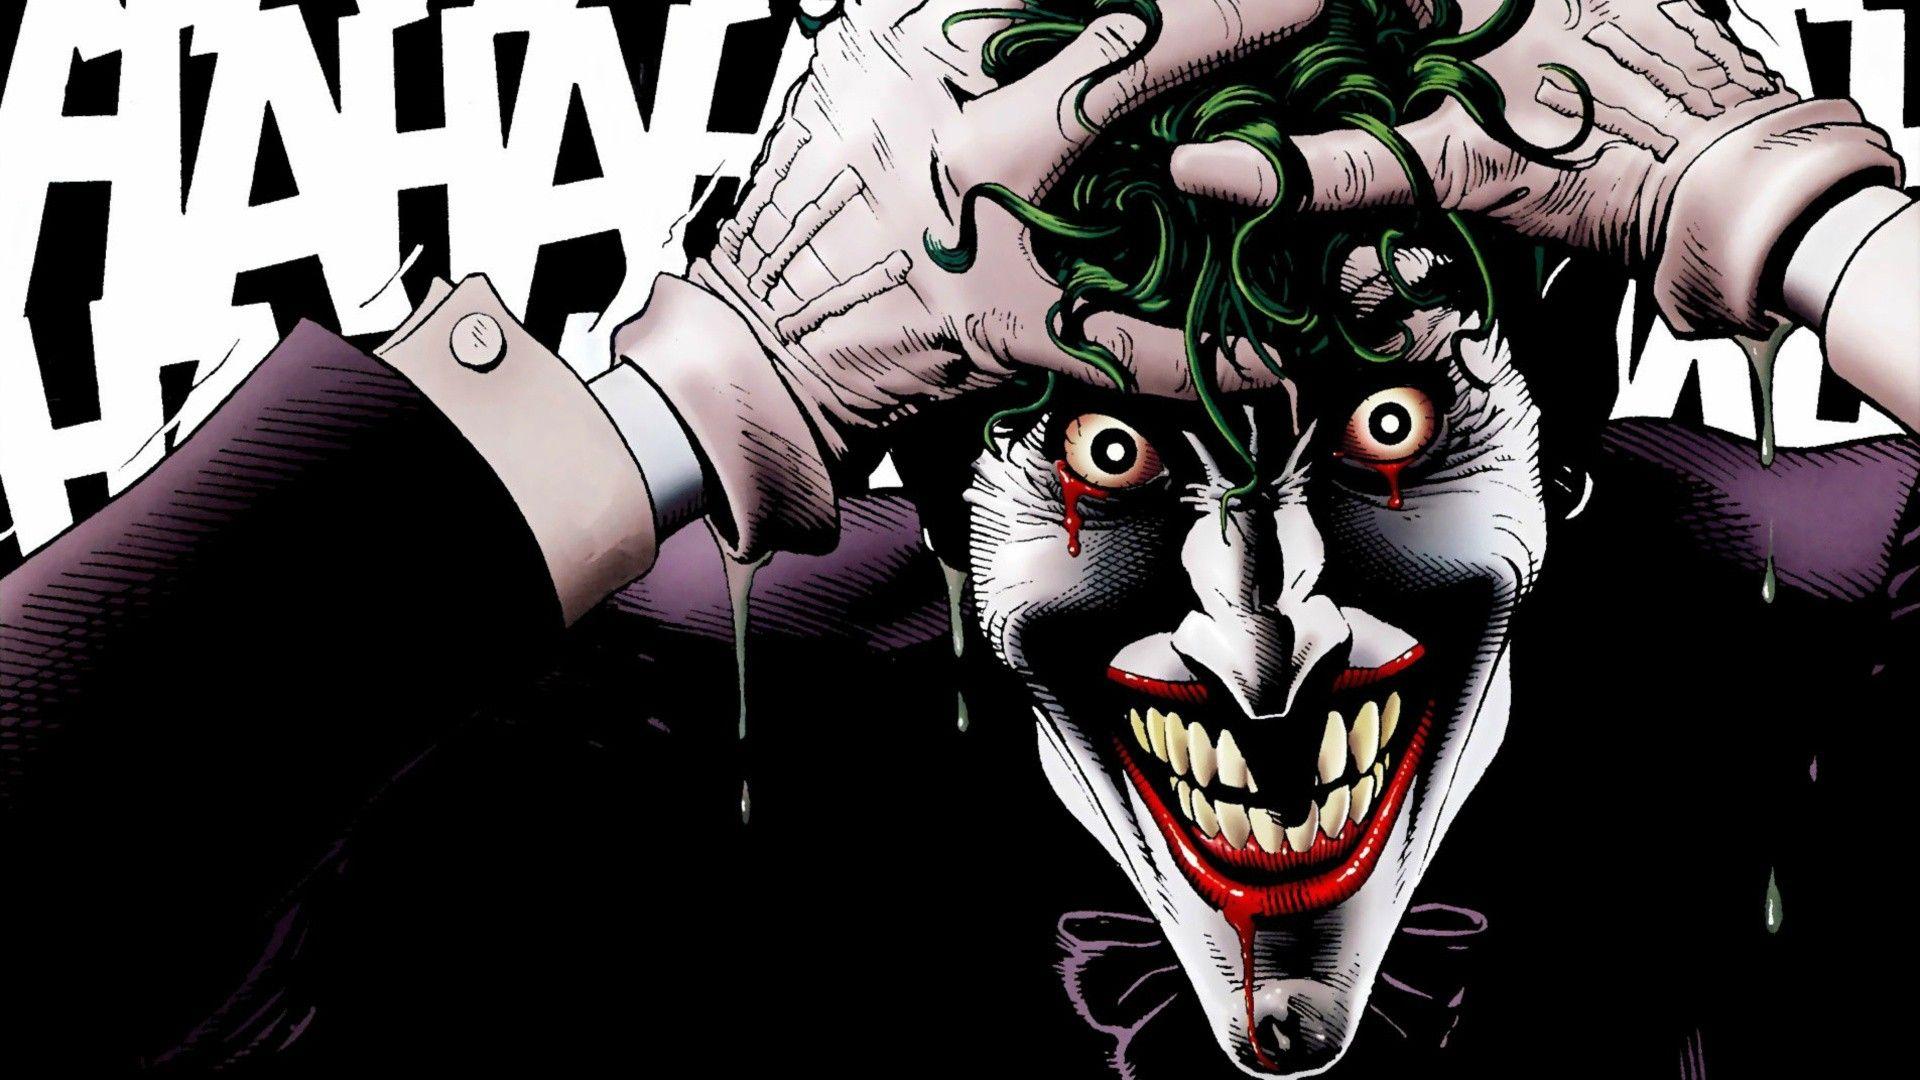 Old Joker Wallpapers - Top Những Hình Ảnh Đẹp